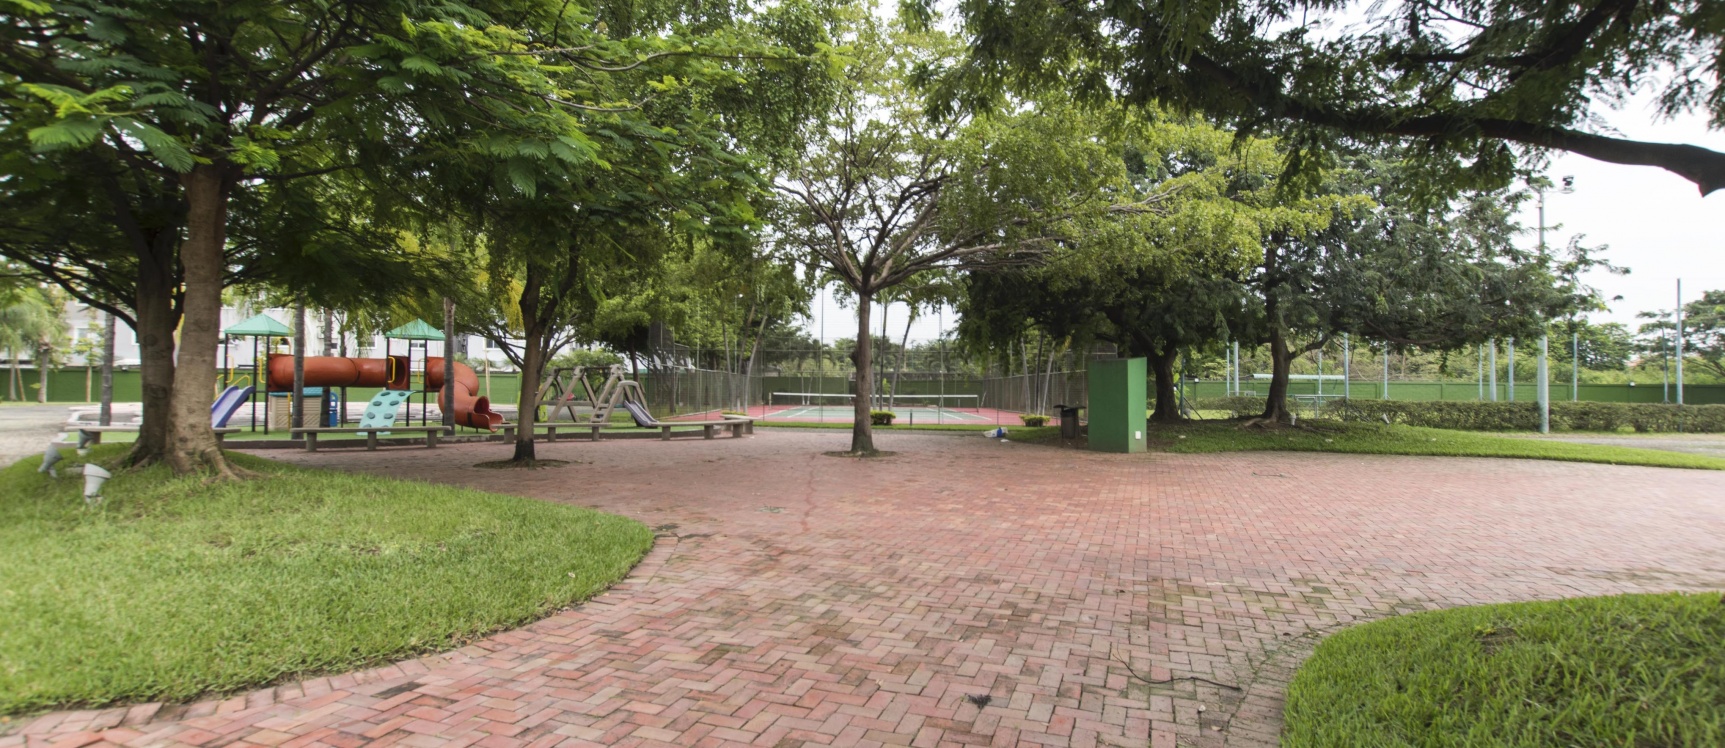 GeoBienes - Departamento de estreno en venta ubicado en la Urbanización Jade, vía Samborondón - Plusvalia Guayaquil Casas de venta y alquiler Inmobiliaria Ecuador